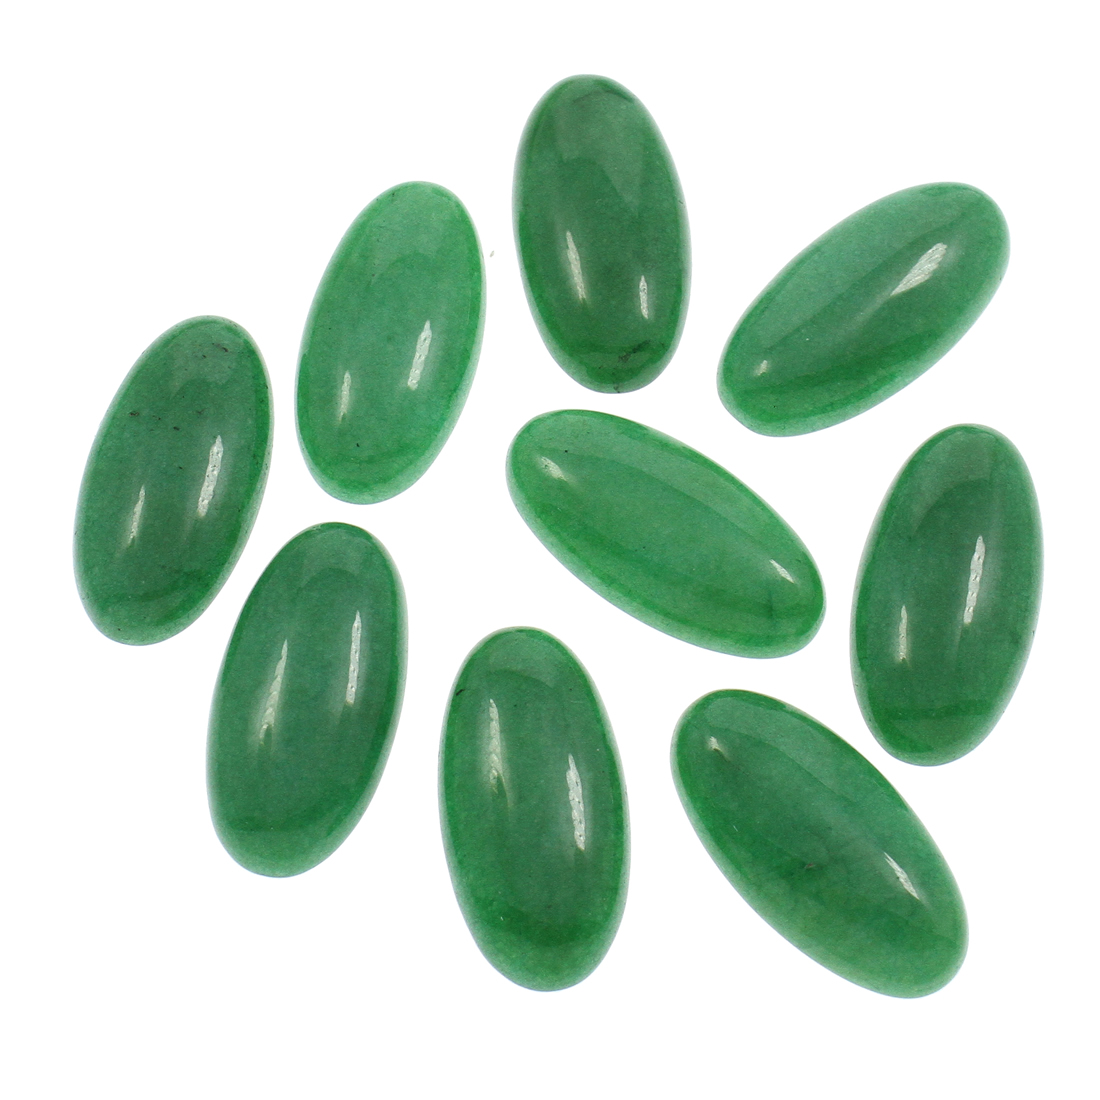 10 green agate